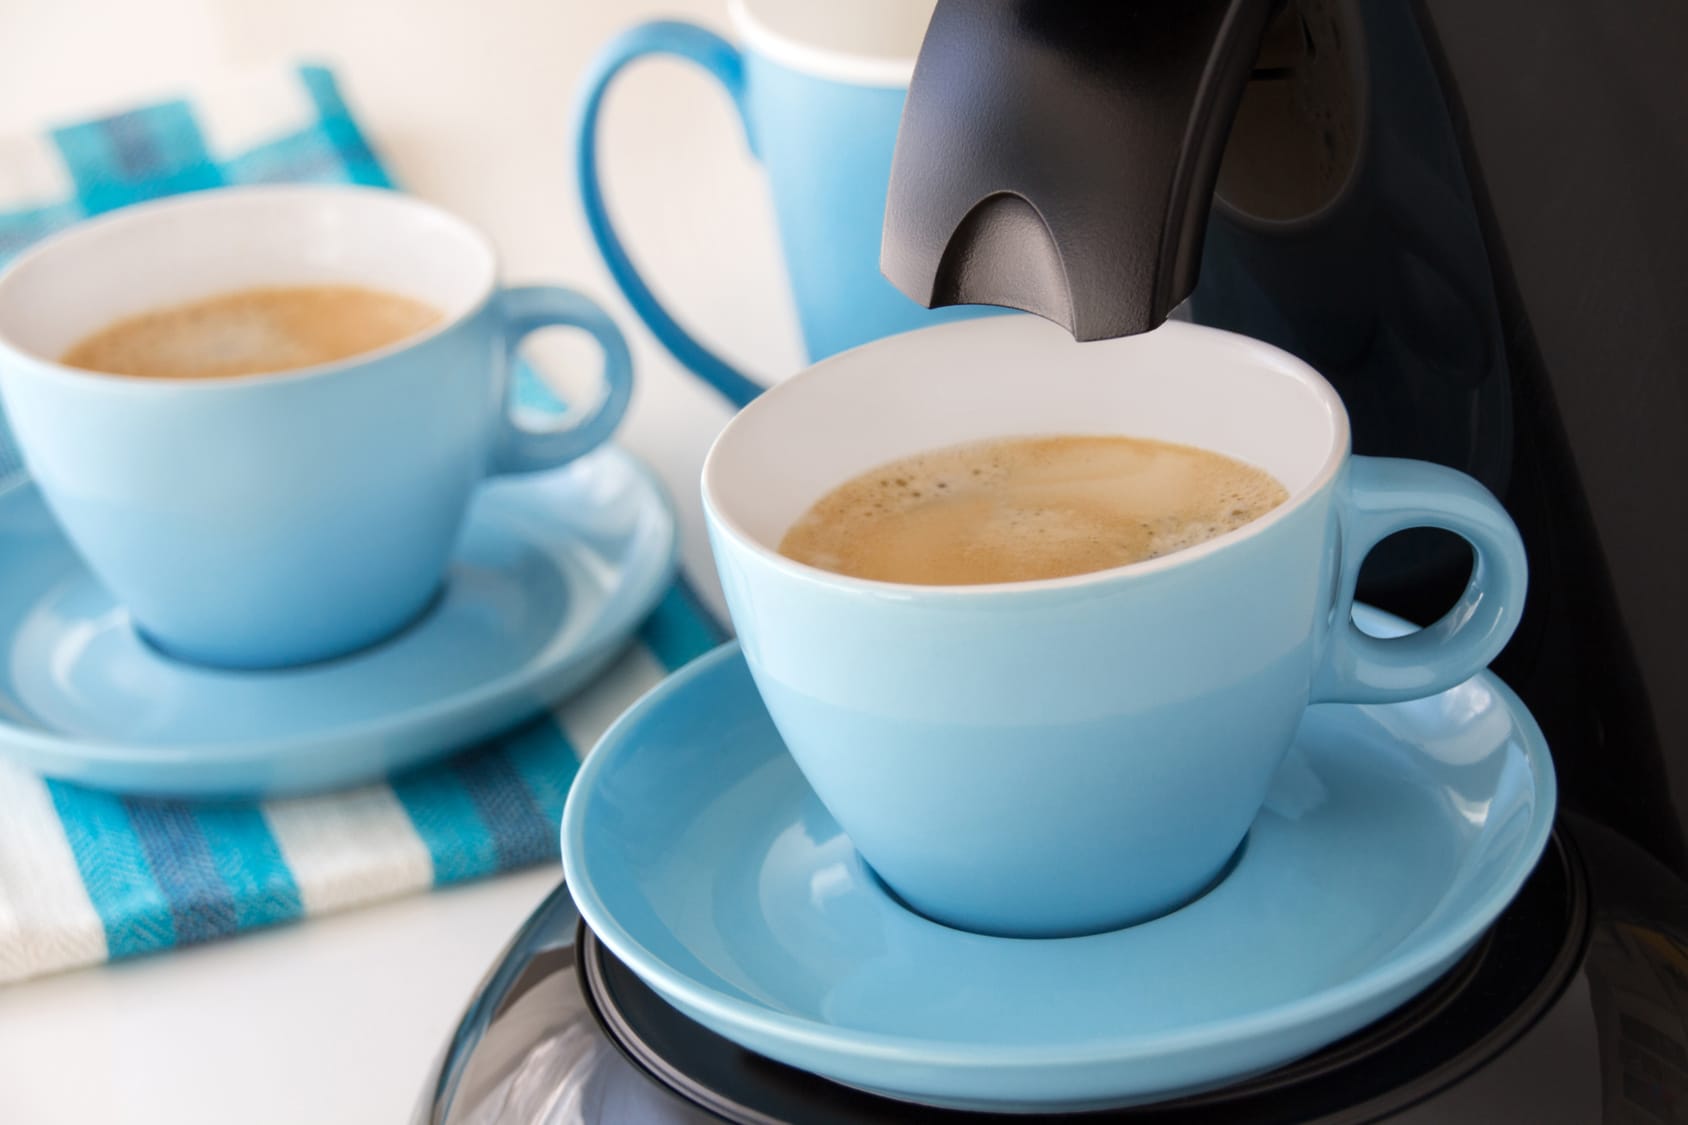 Kaffee zubereiten – Tipps & Tricks!